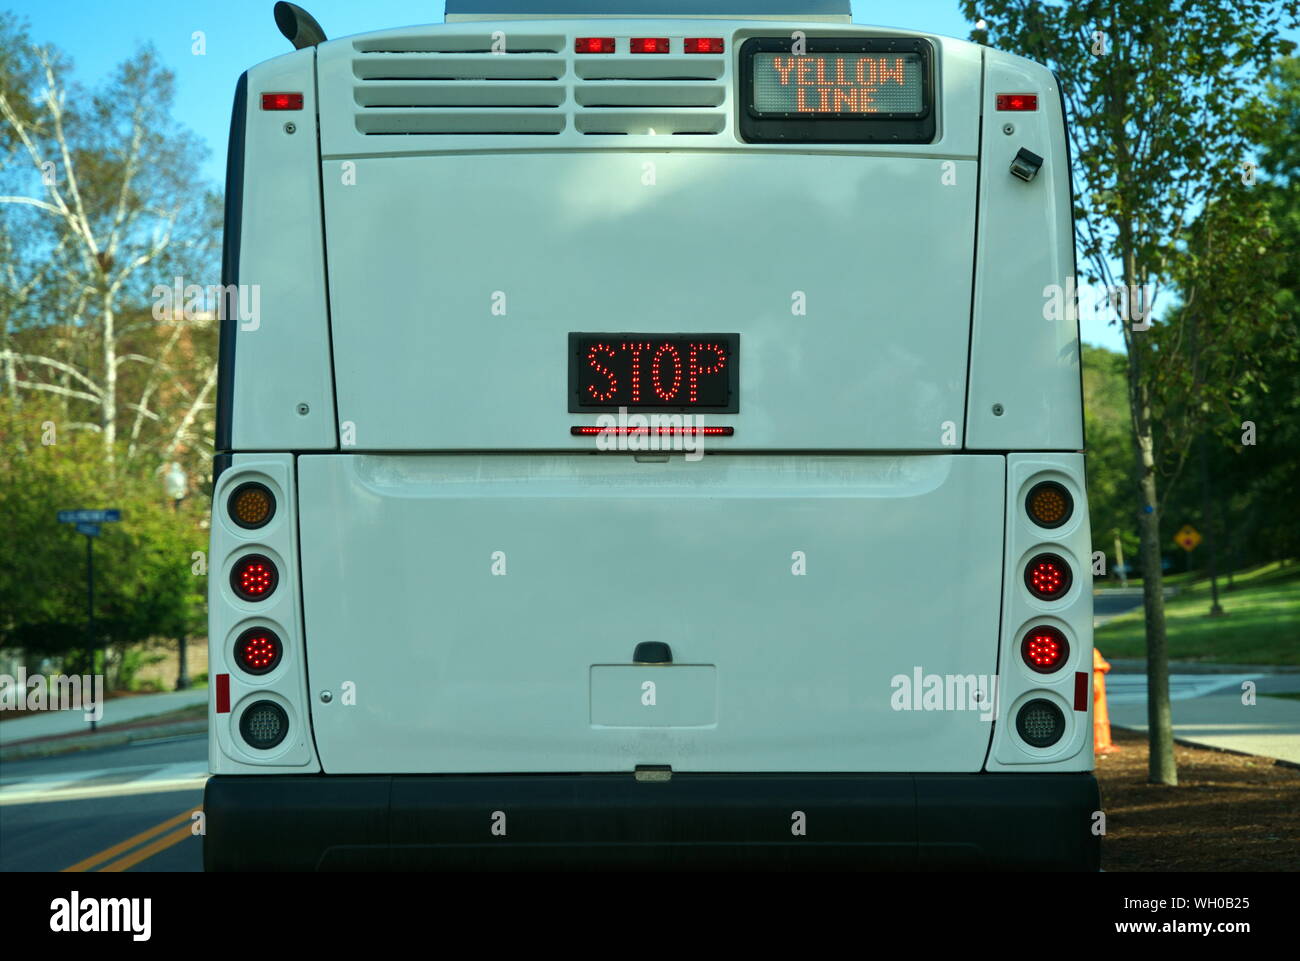 Moderne öffentliche Bus mit Rückfahrkamera, und helle LED-Beleuchtung für Fahr- und Anzeigen für Informationen und Aktionen zu stoppen. Stockfoto